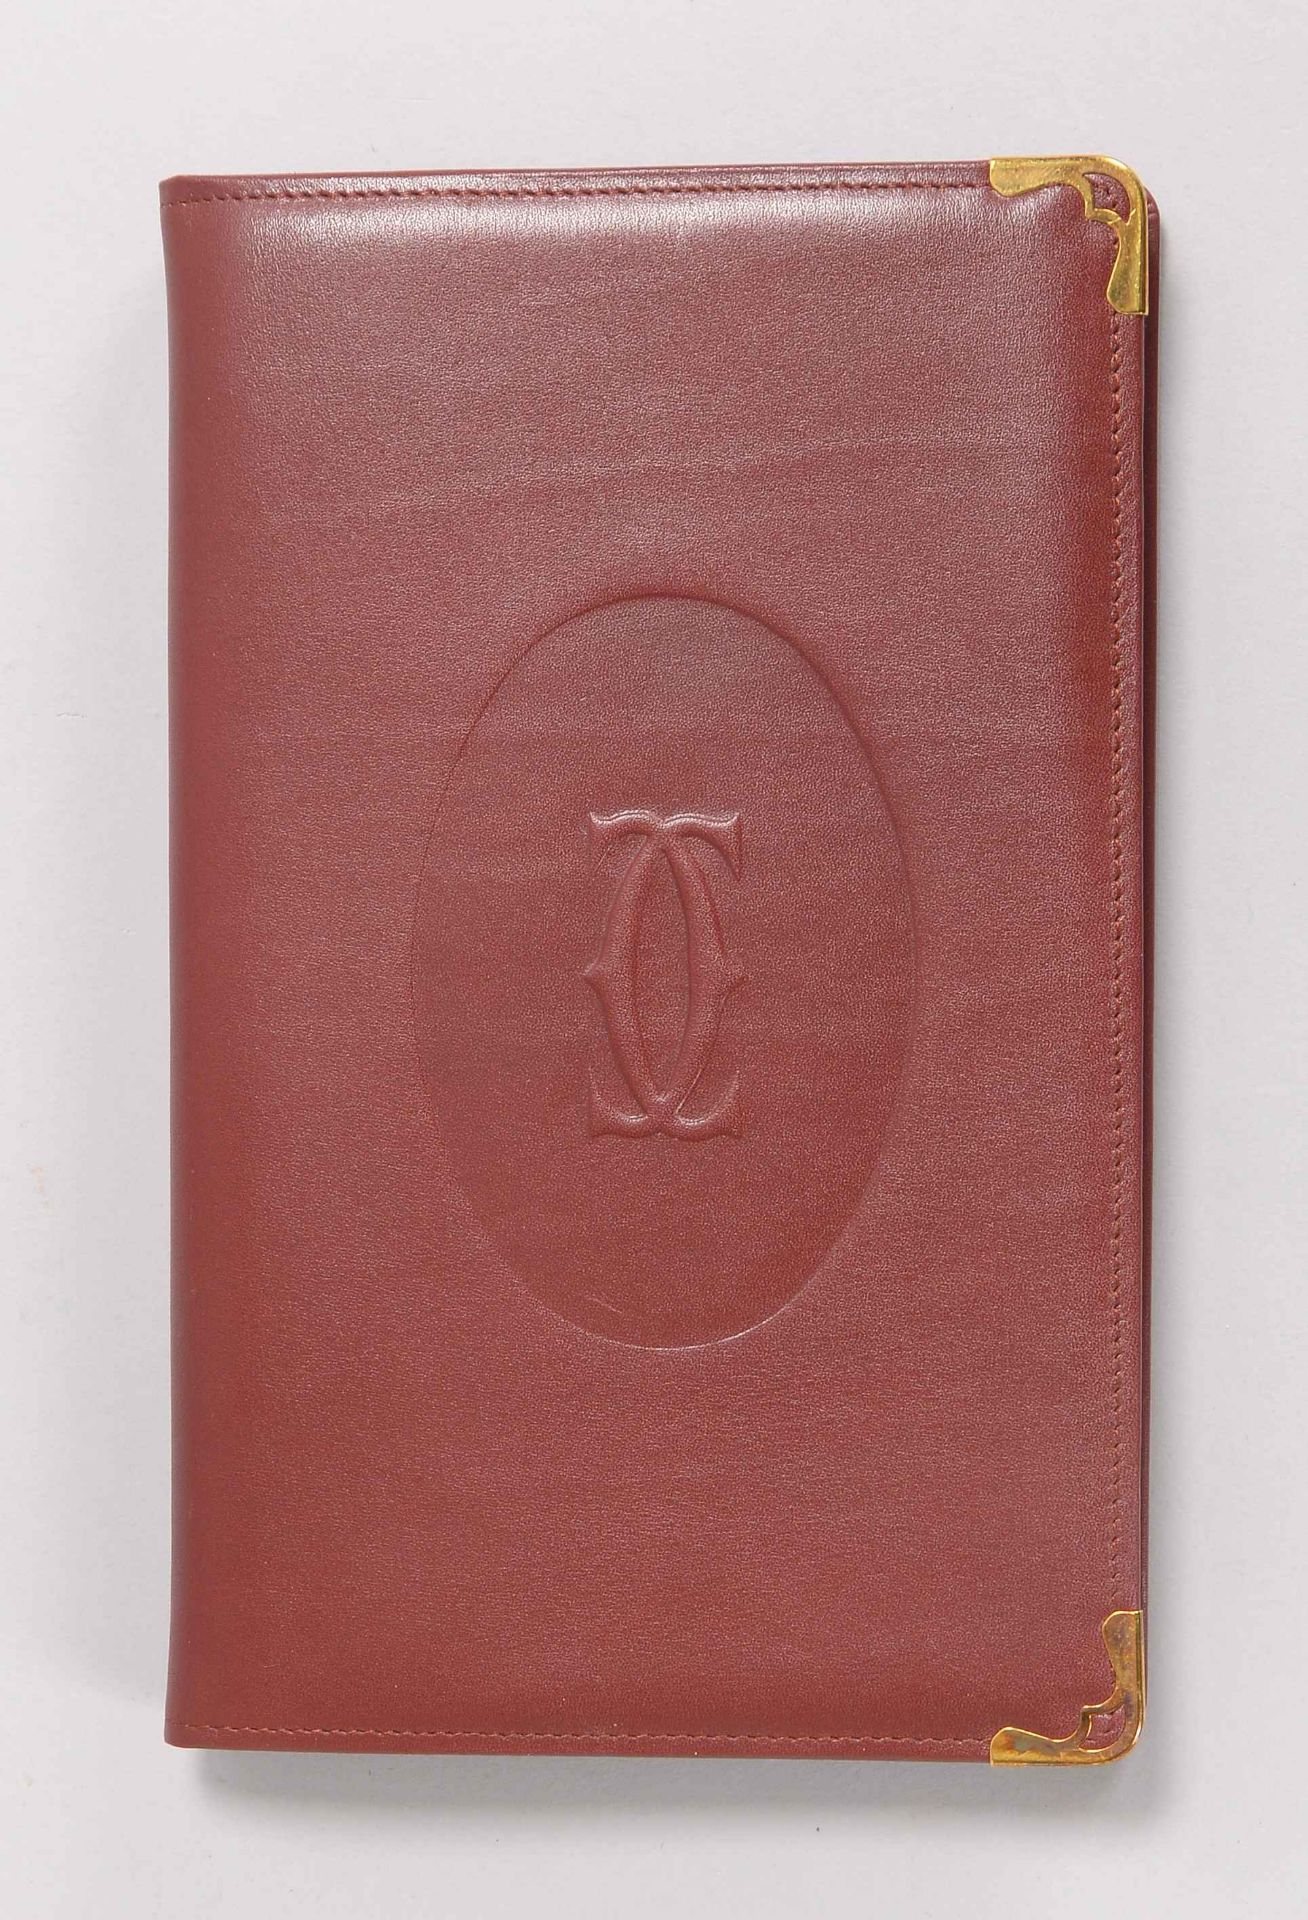 Cartier, Adressbuch, Einband burgund-rotes Rindsleder, im original Karton; Maße 22 x 14 cm